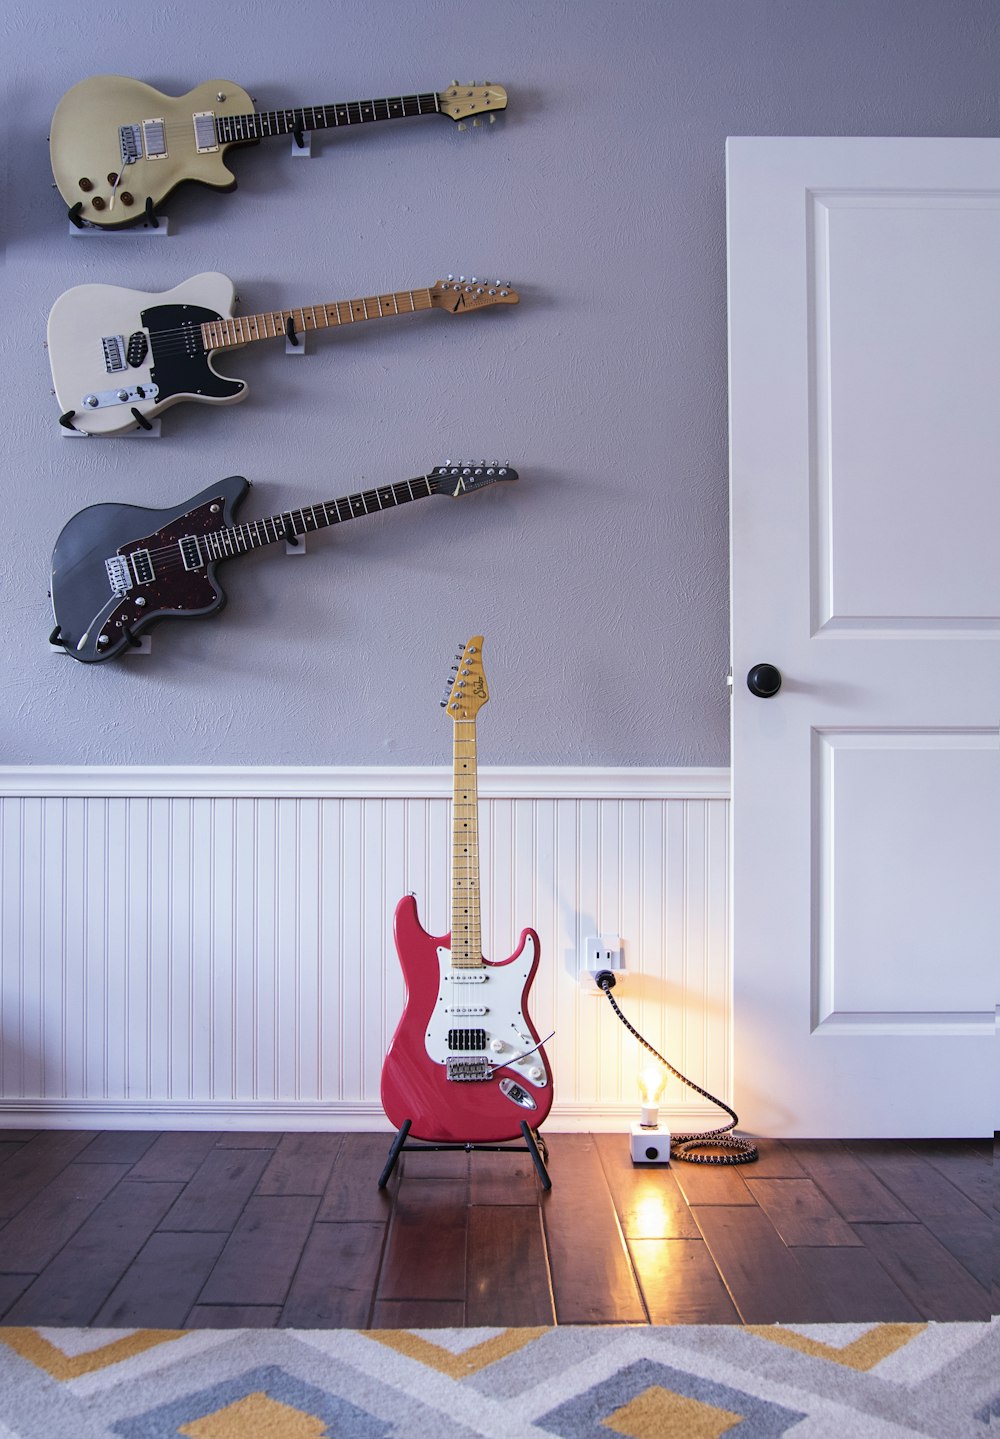 Cuatro guitarras eléctricas de colores variados